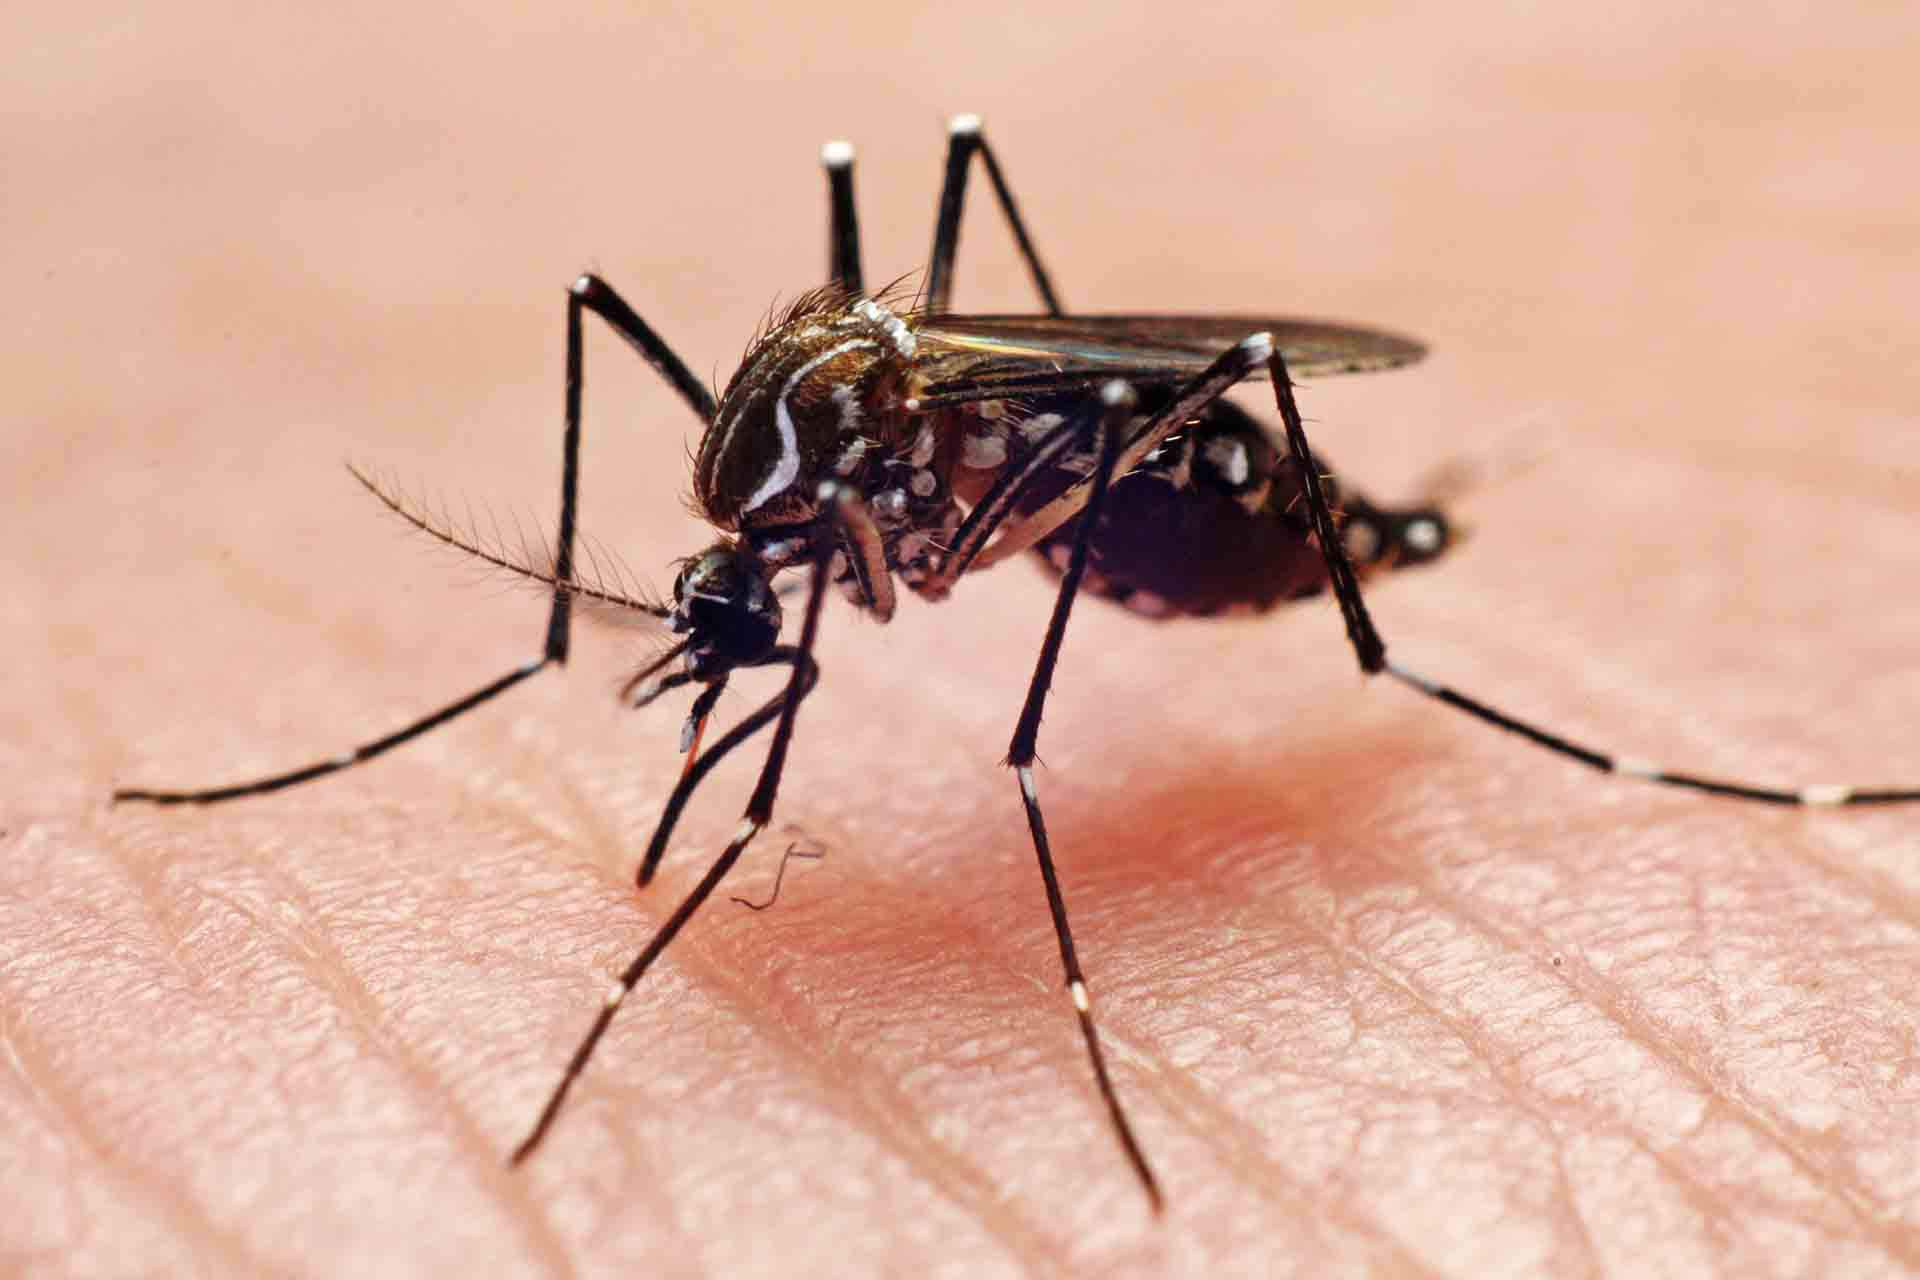 El mosquito Aedes aegypti es el vector del dengue, por lo que prevenir su reproducción es clave a fin de evitar la enfermedad (Getty)